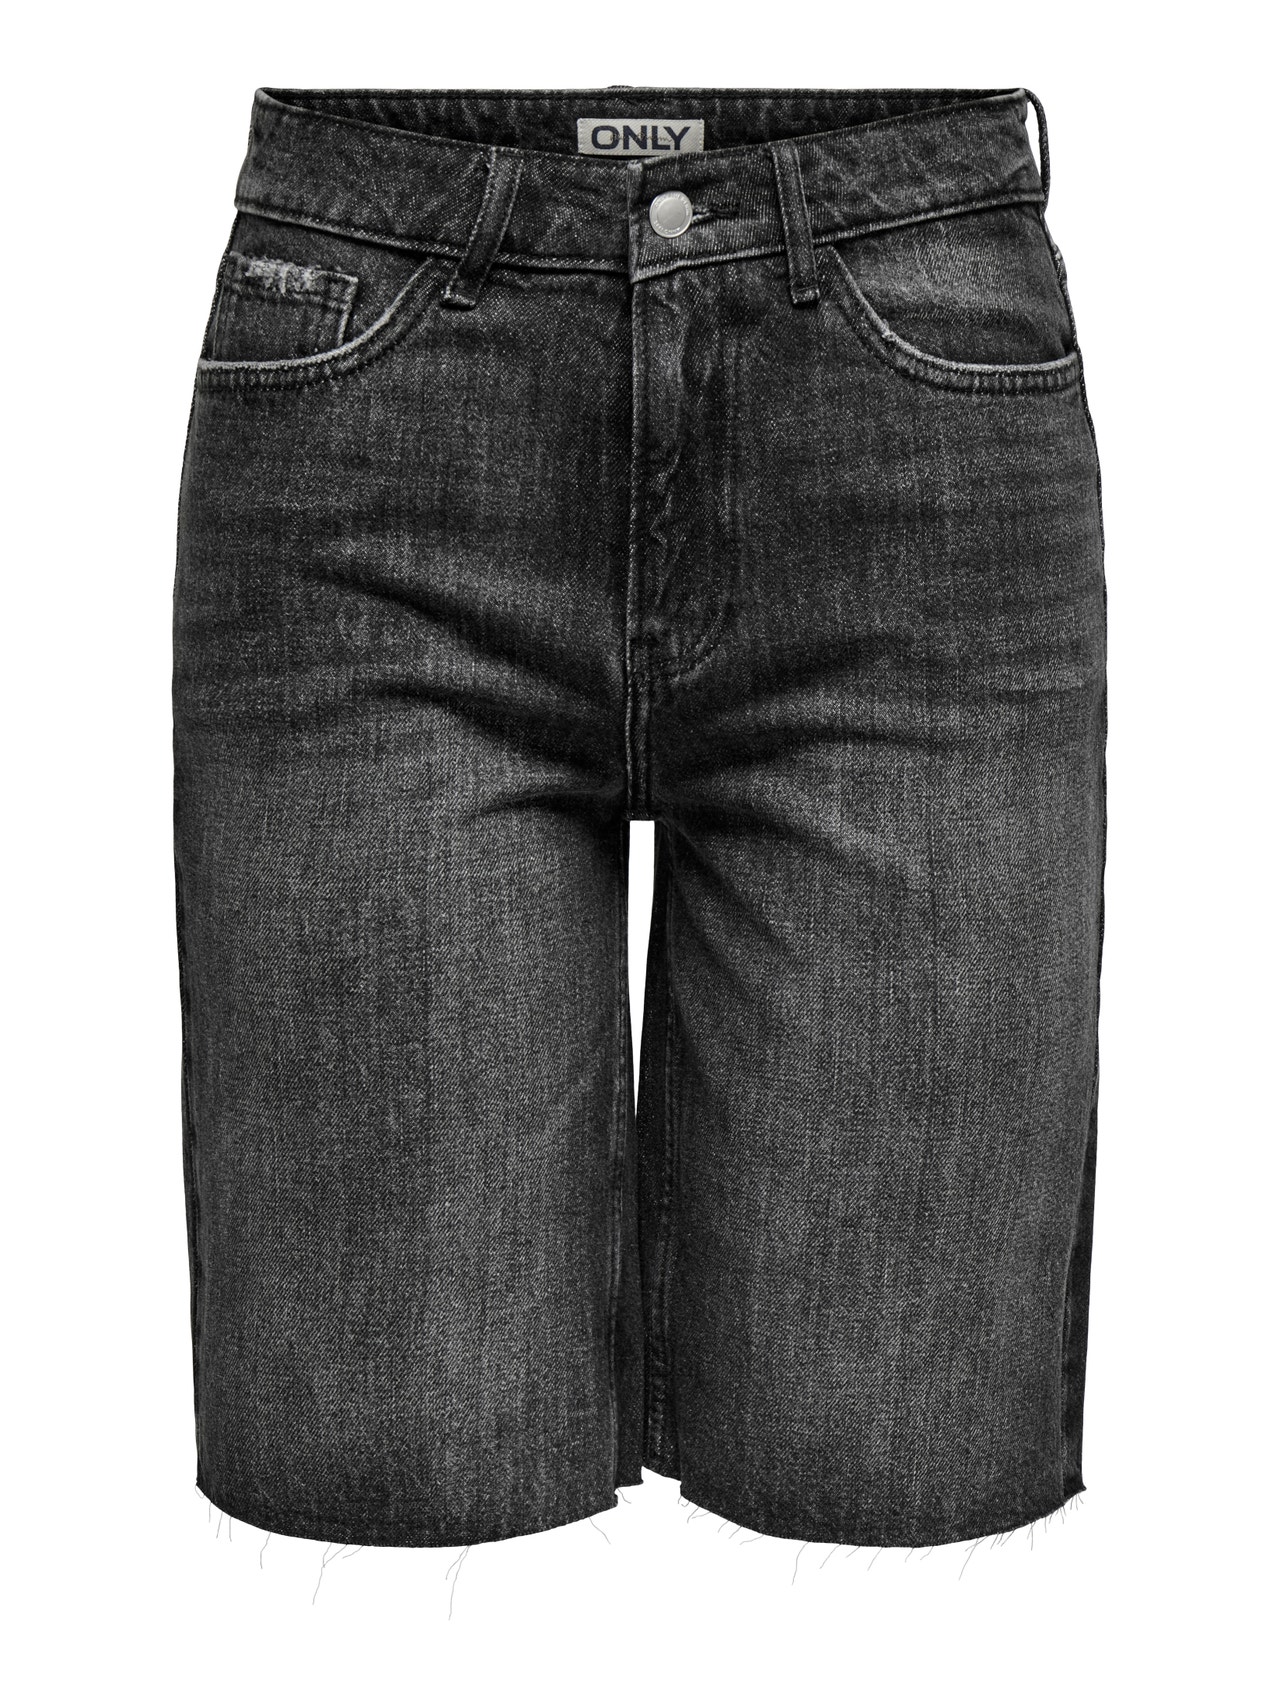 ONLY Shorts Corte loose Cintura media Bajos deshilachados -Washed Black - 15340963